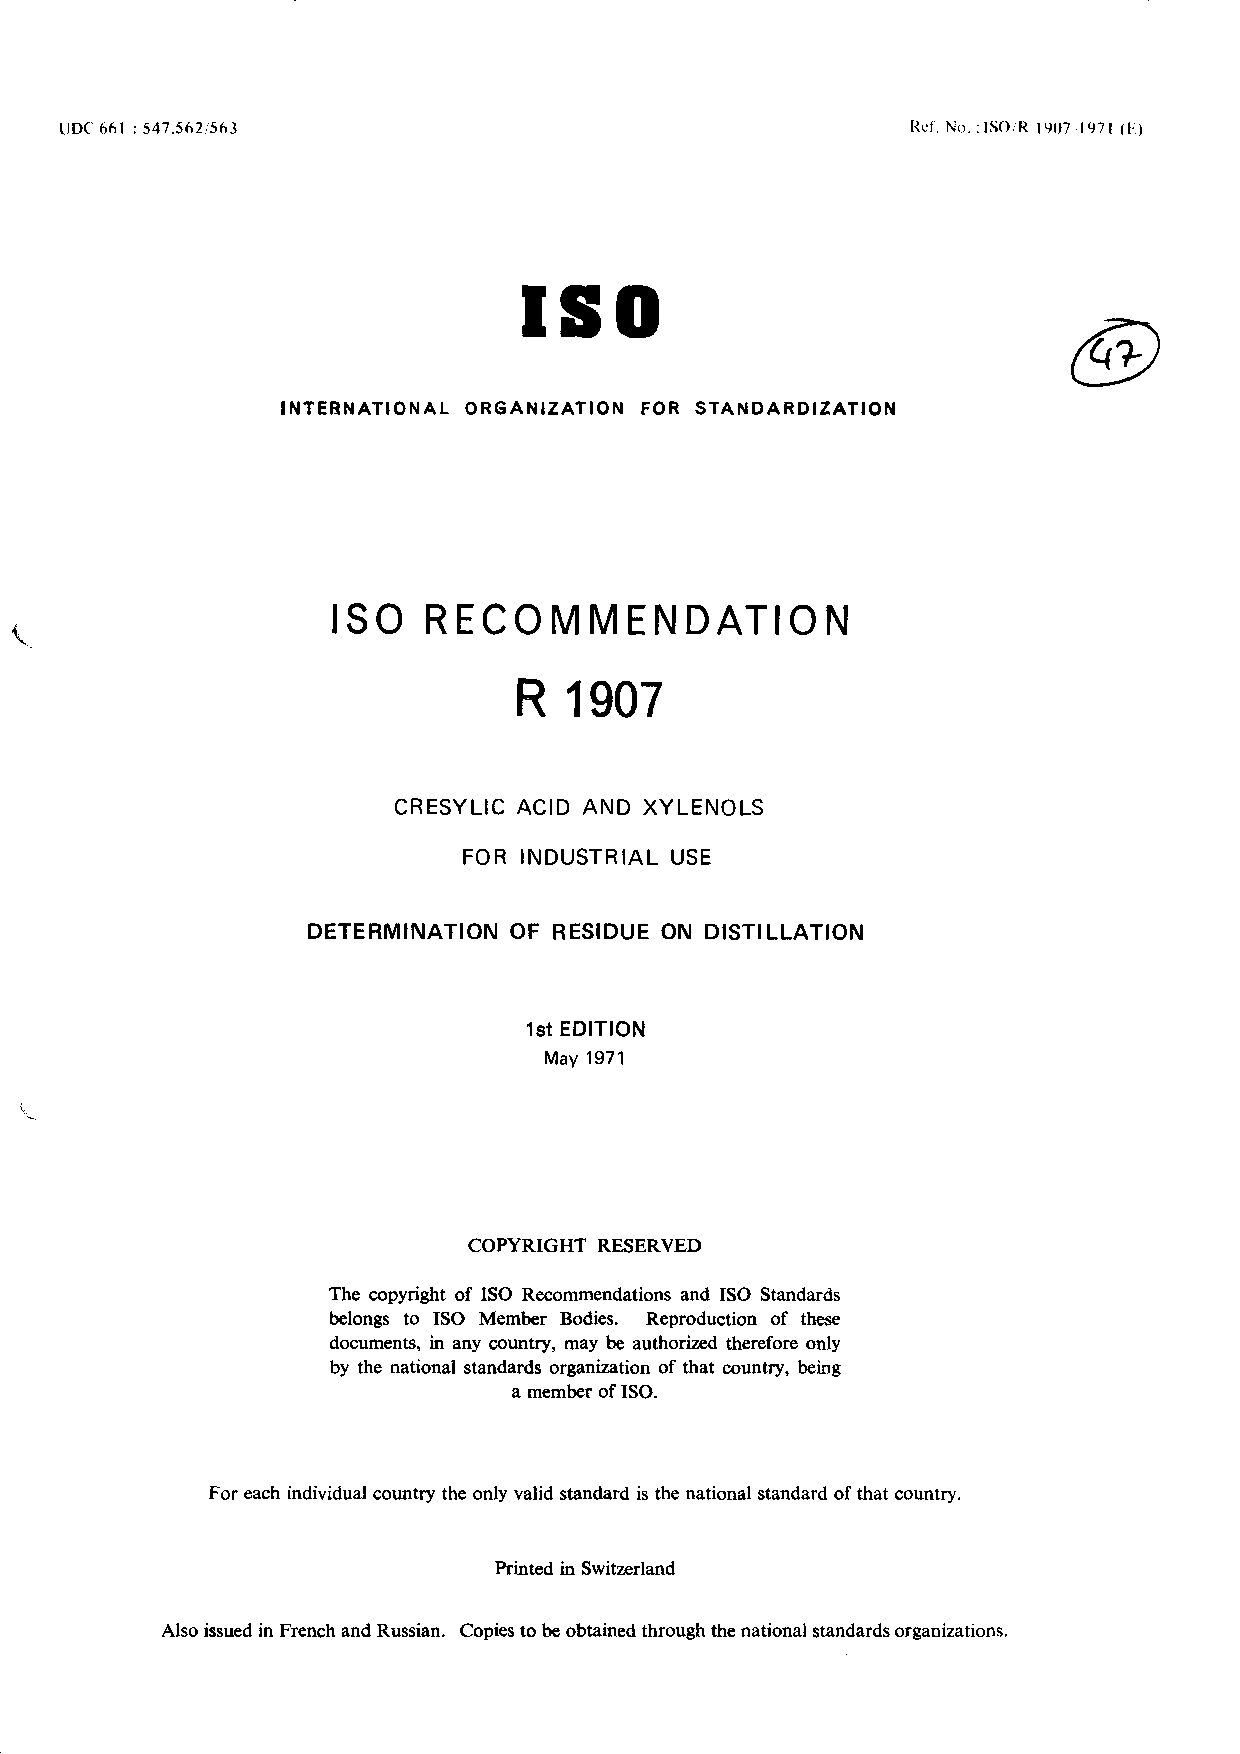 ISO/R 1907:1971